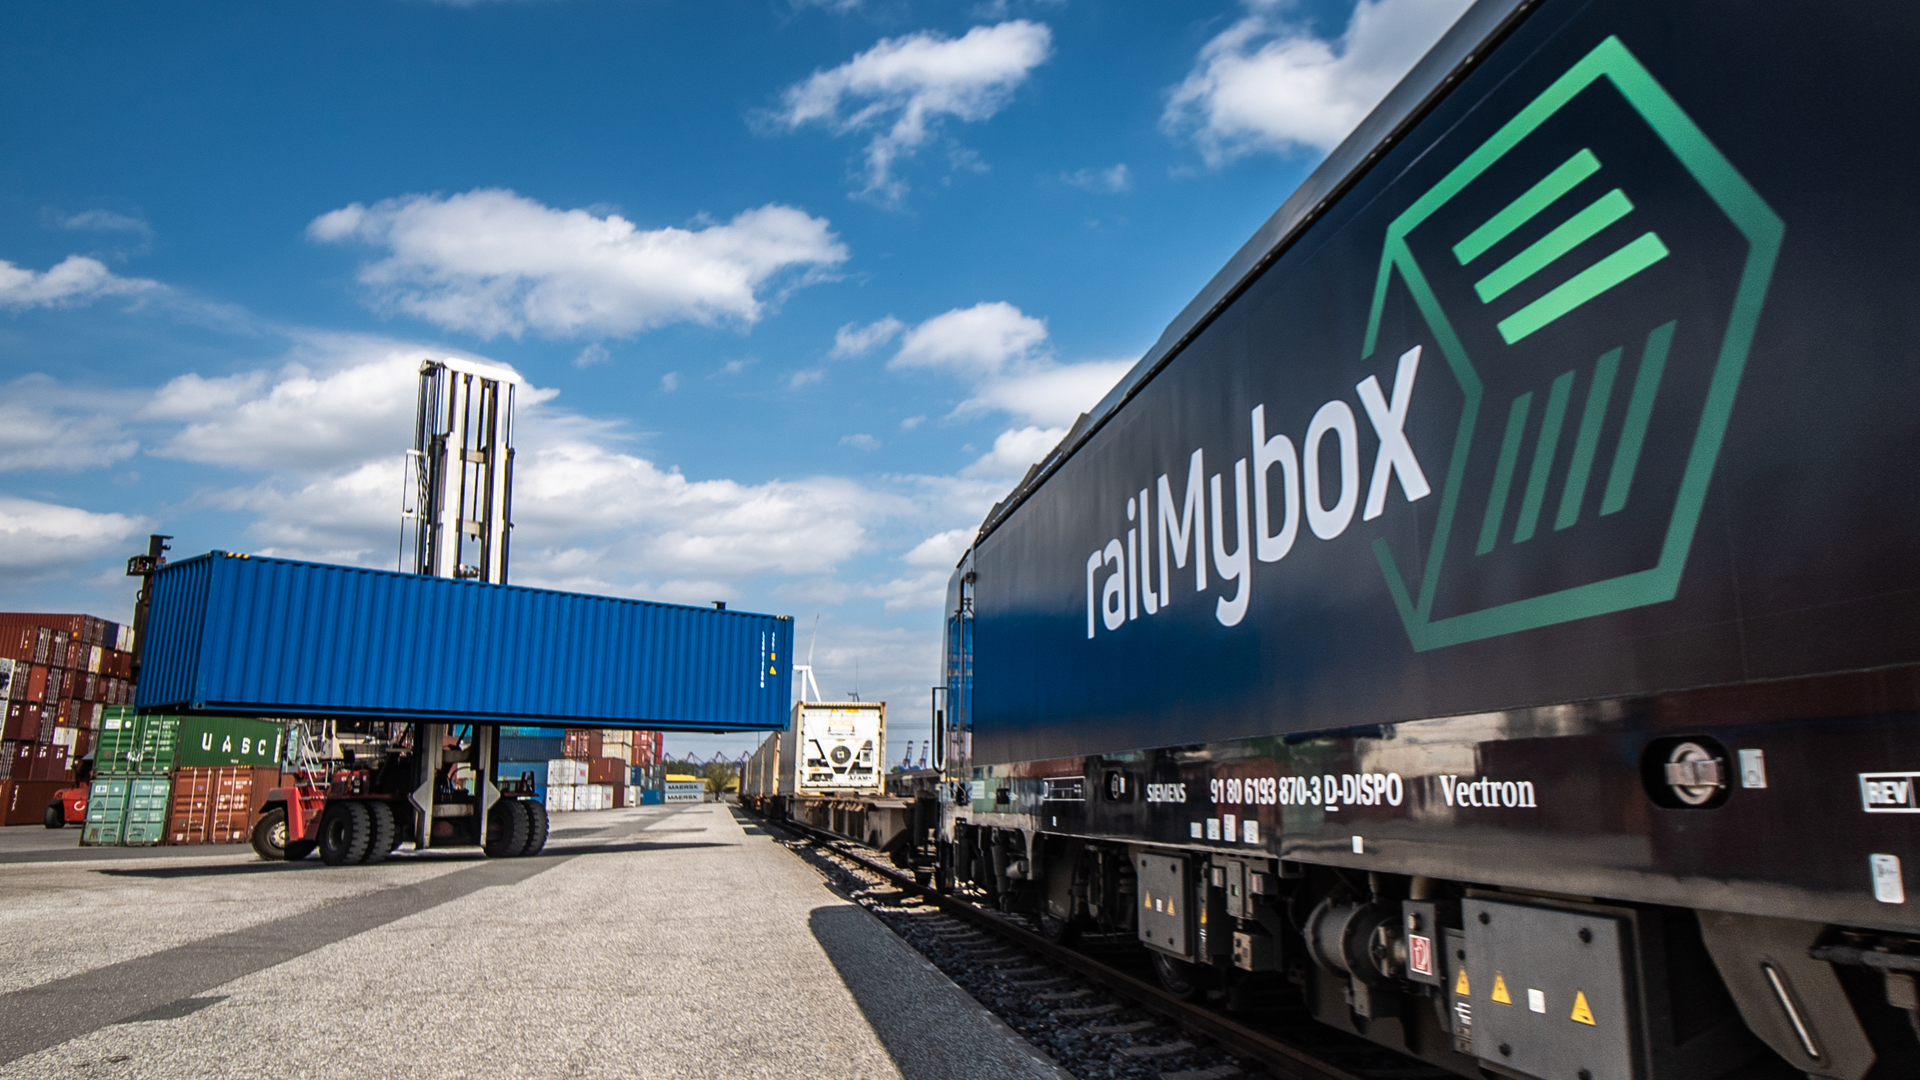 Intermodal – einfach und digital mit railMybox